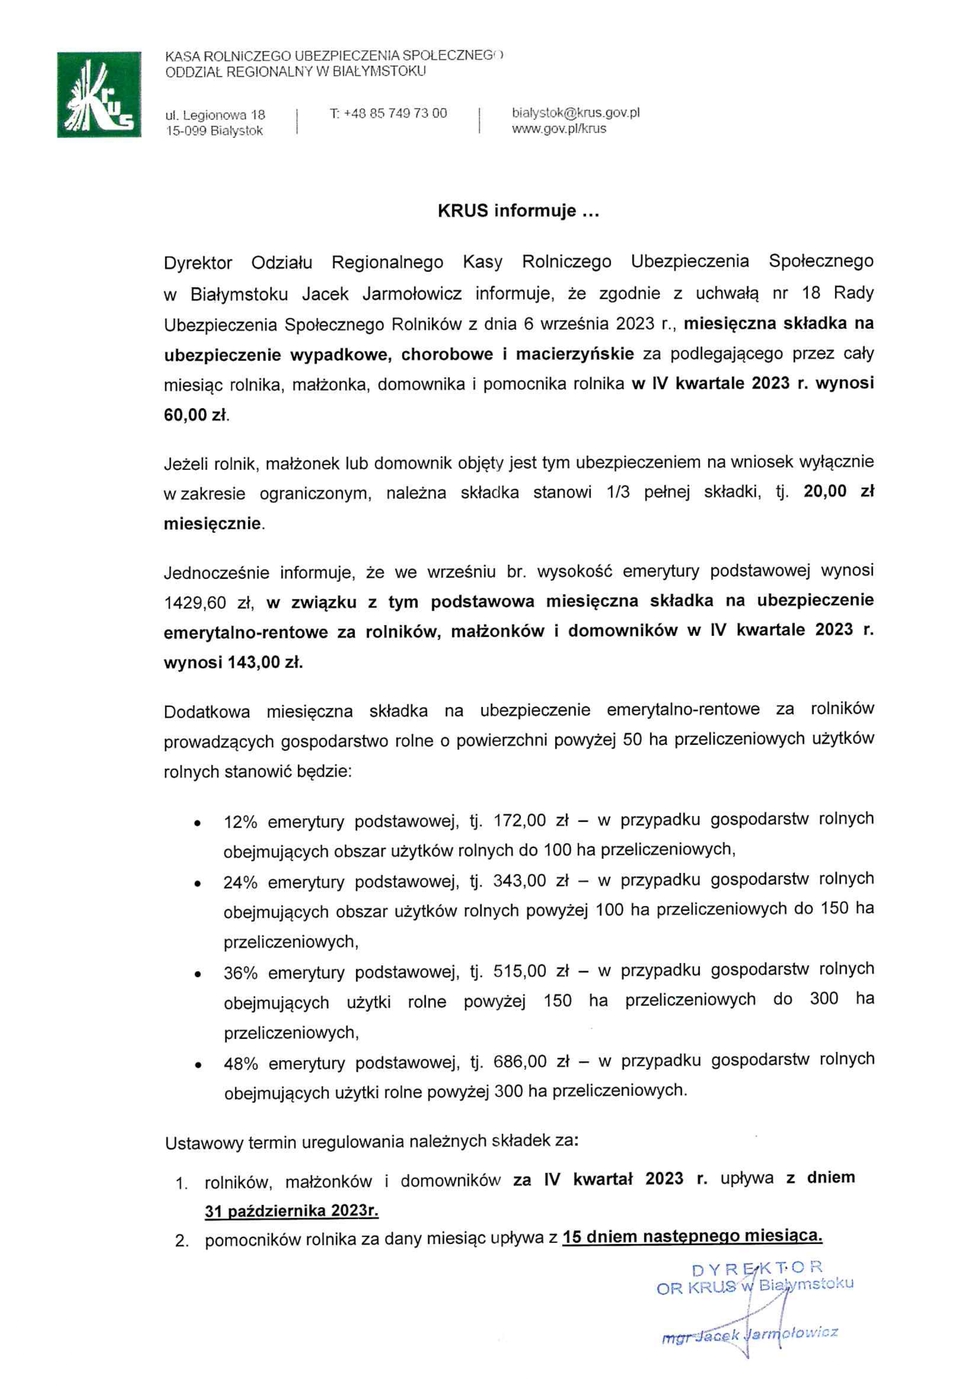 Zdjęcie do wiadomości KRUS - wymiar składek na ubezpieczenie za IV kwartał 2023 rok